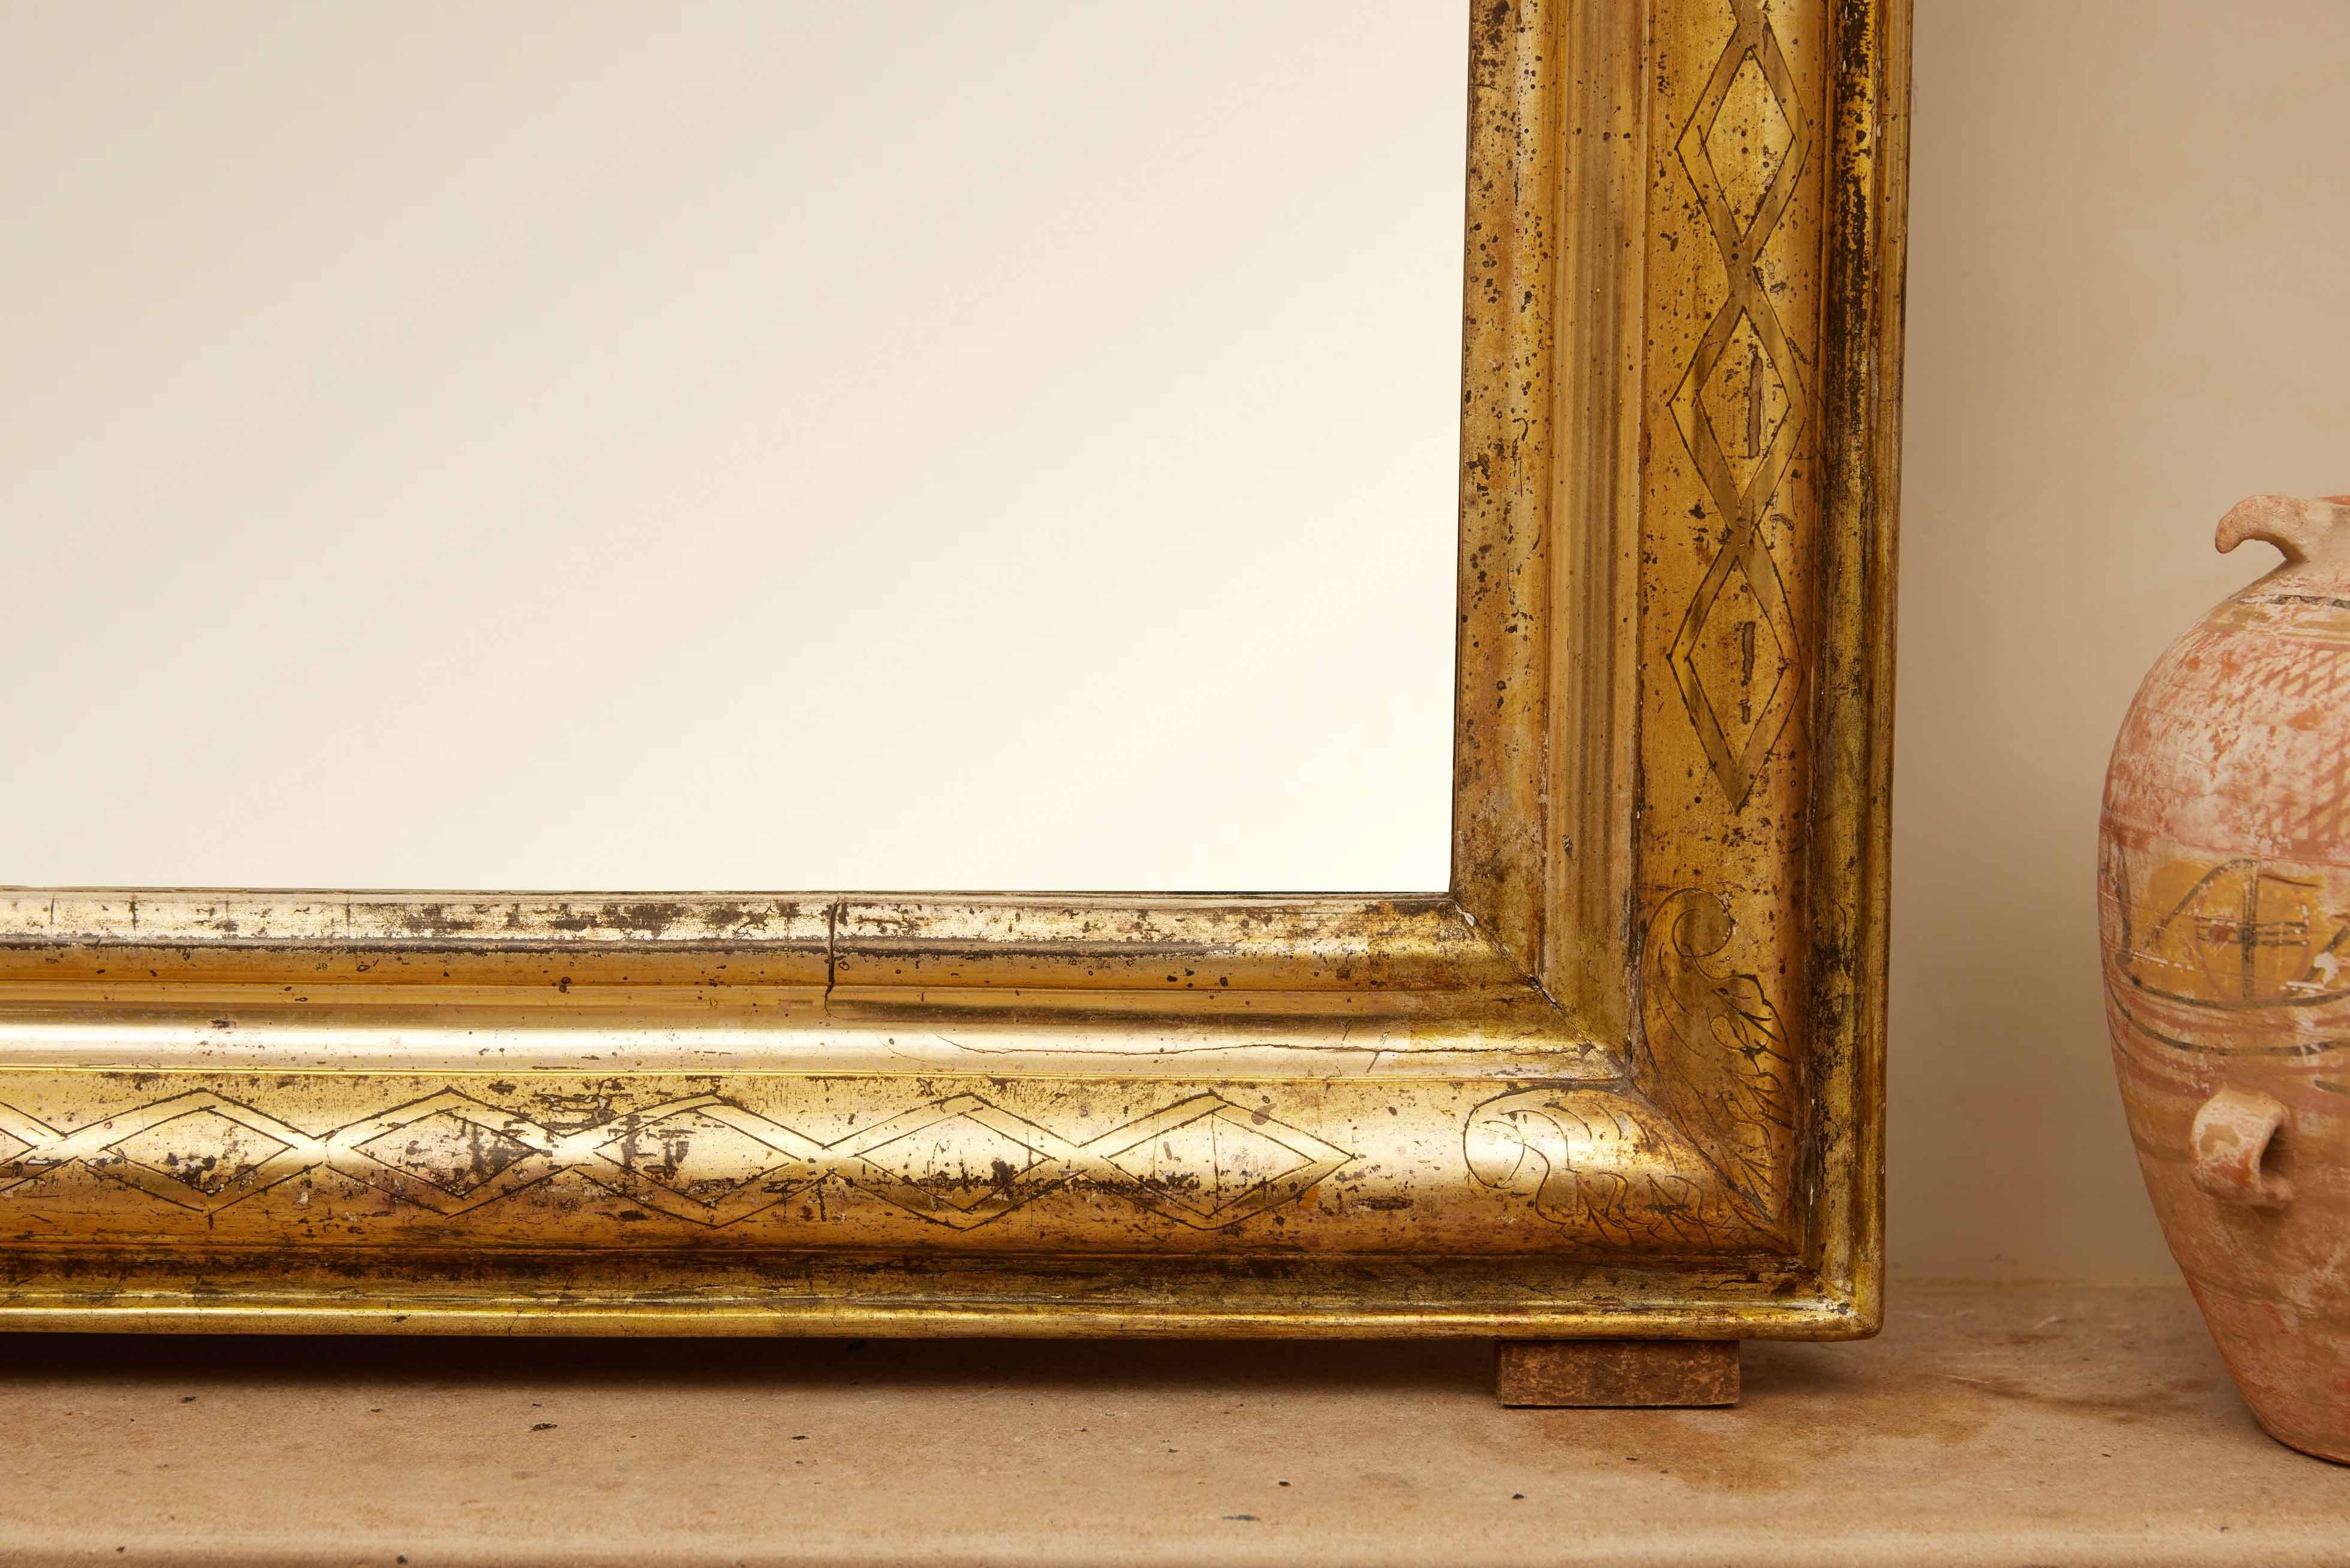 Louis-Philippe-Spiegel aus dem 19. Jahrhundert, ein Zeugnis der raffinierten Ästhetik dieser Epoche. Dieses exquisite Stück, das in Frankreich gefunden wurde, blickt auf eine reiche Geschichte zurück, die bis in die 1860er Jahre zurückreicht, und